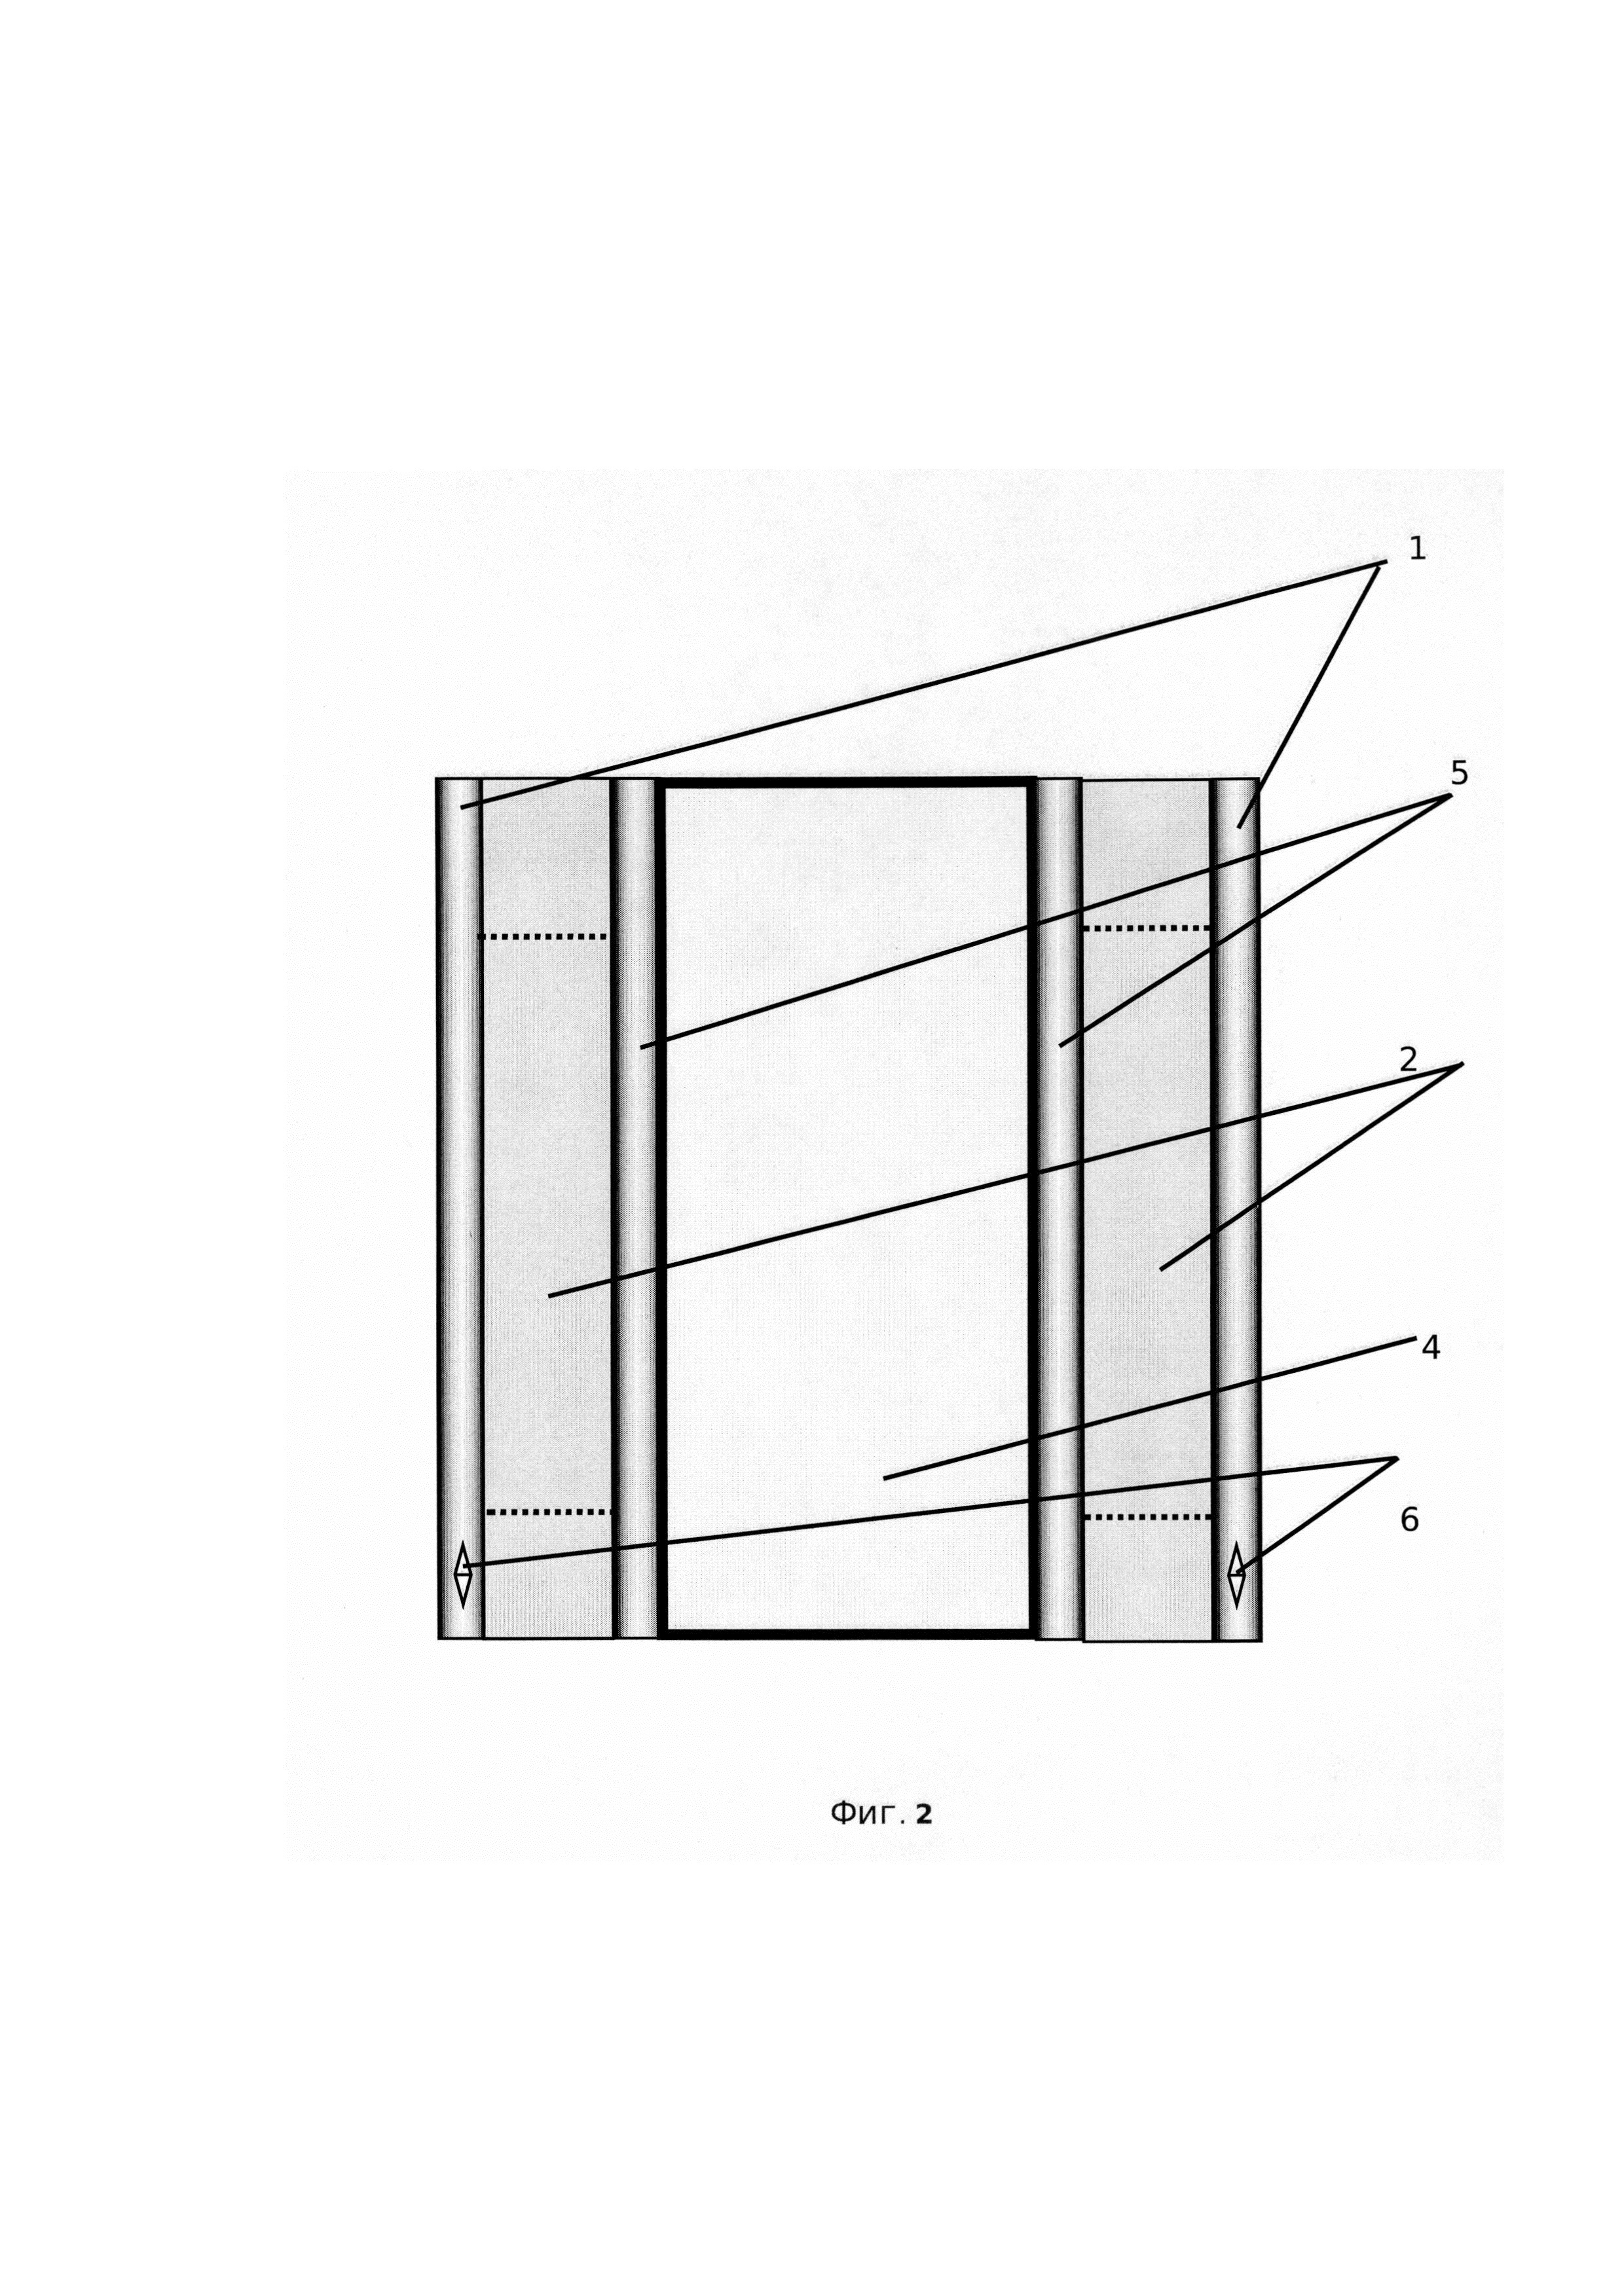 Несъёмная опалубка для монолитного бетона или железобетона из неорганического армированного стекла (варианты)